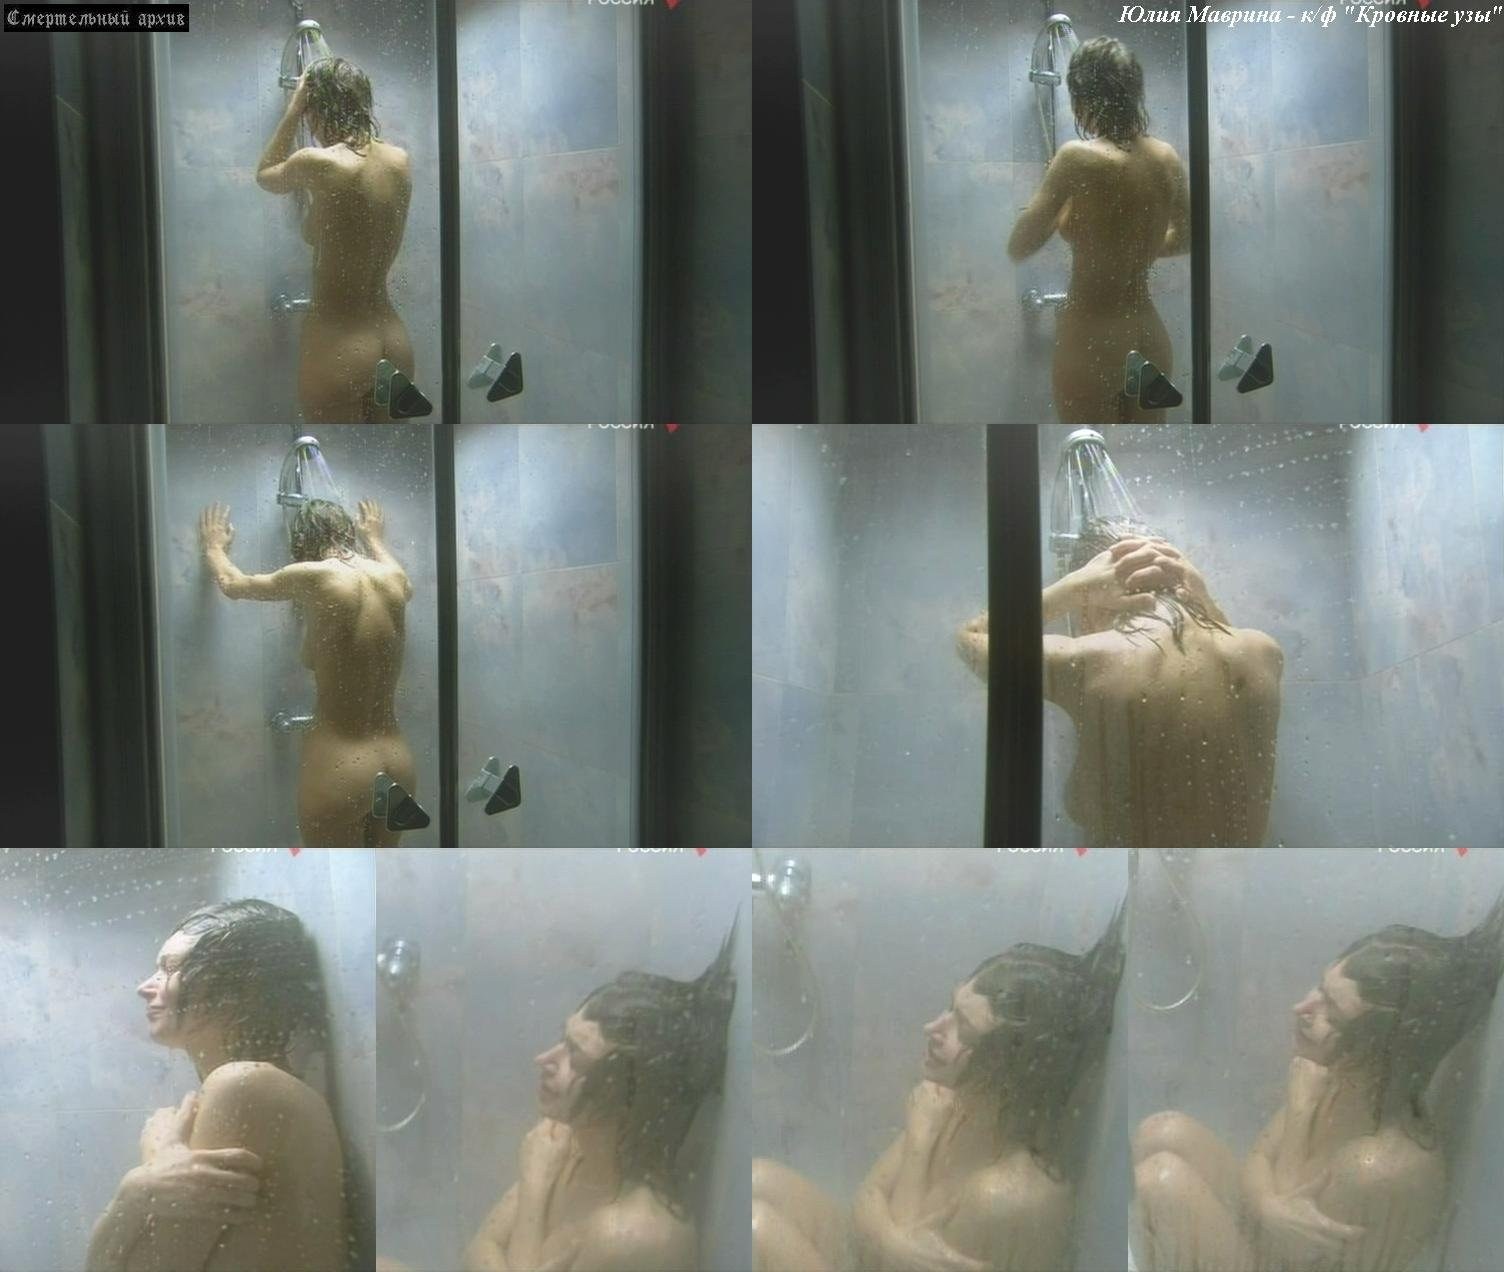 Юлия афанасьева актриса голая (61 фото) - порно и эротика HuivPizde.com